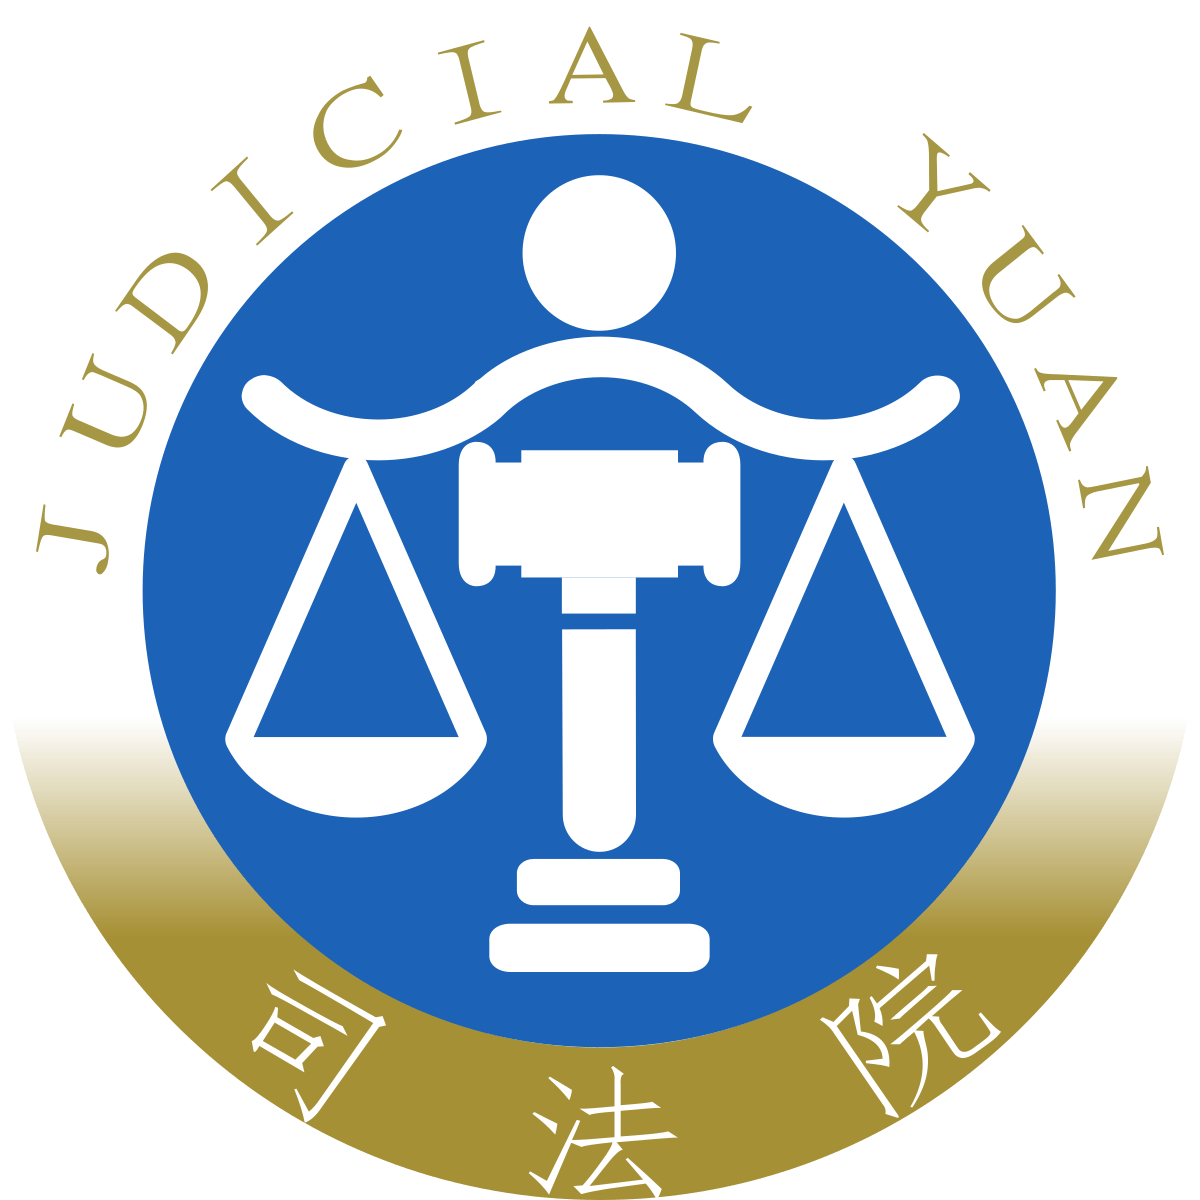 168 судебный. Судебная система. Тайвань судебная власть. Символы высшего суда. Judicial logo.